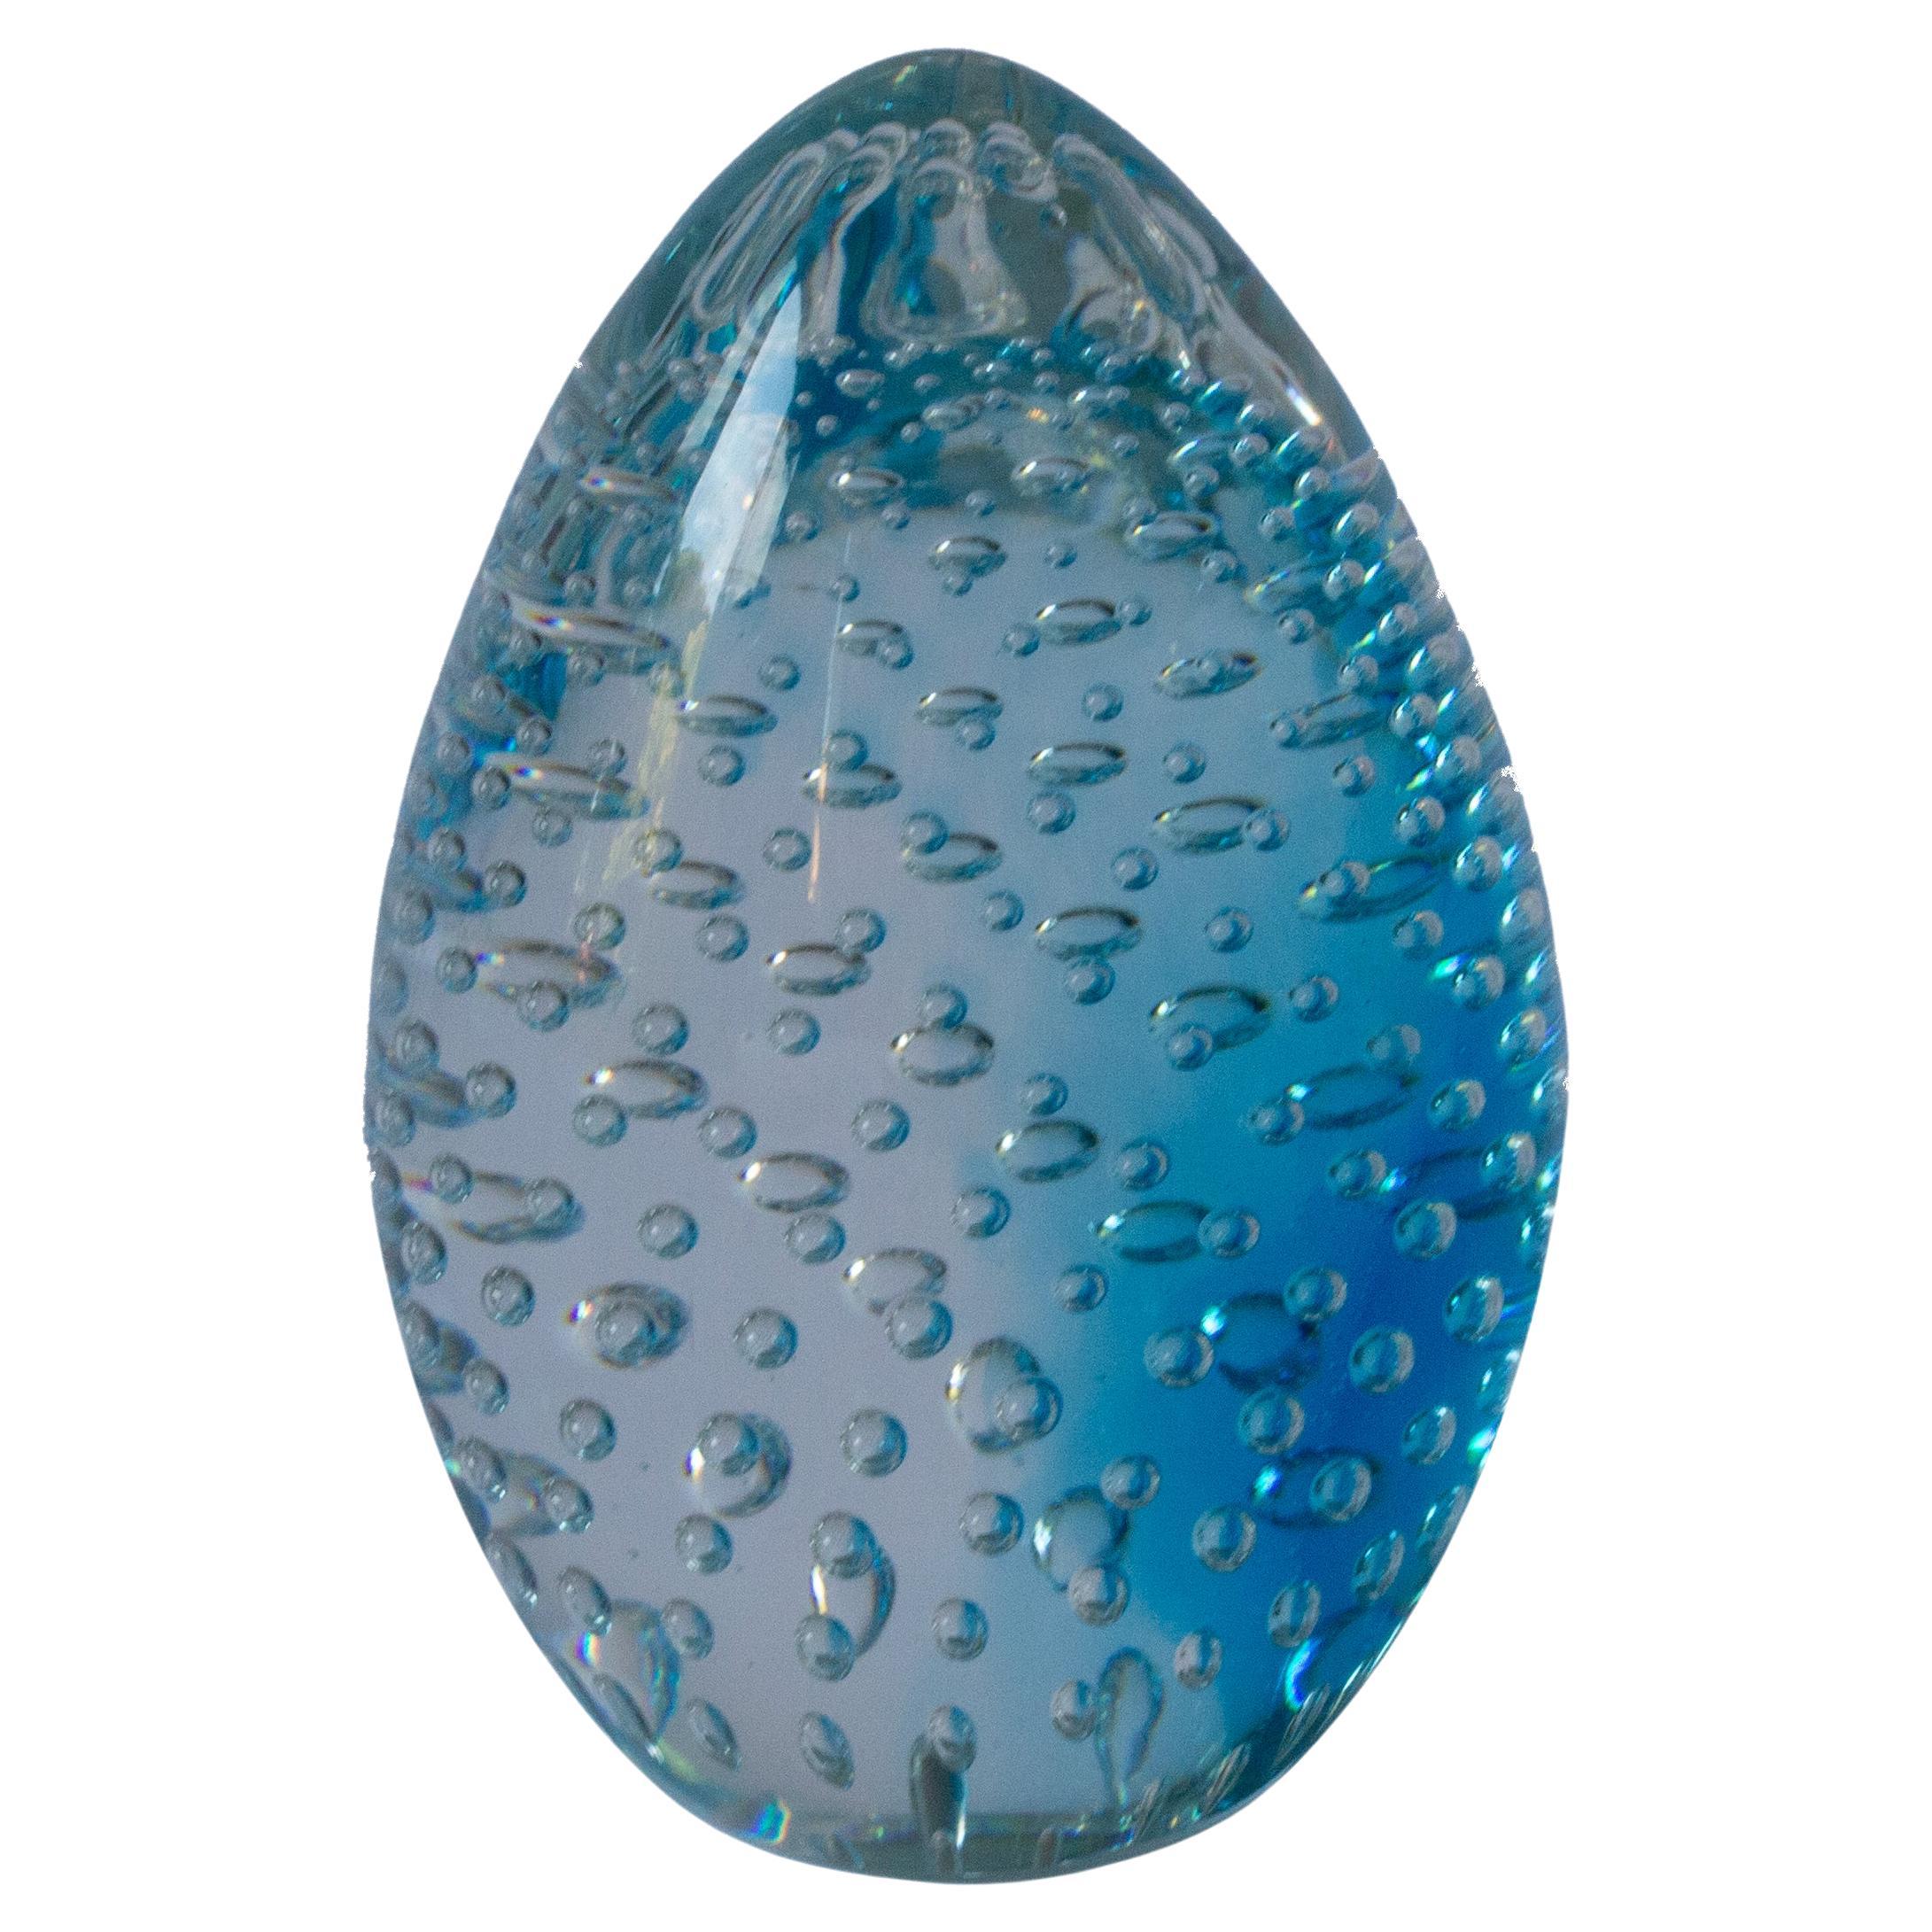 Die Archemide Seguso Glass Blue Letterpress, die in Murano hergestellt wird, besticht durch ihre spiralförmigen Luftblasen. Der renommierte Glaskünstler Archimede Seguso stellt mit dieser Kreation seine innovativen Techniken und seine künstlerische